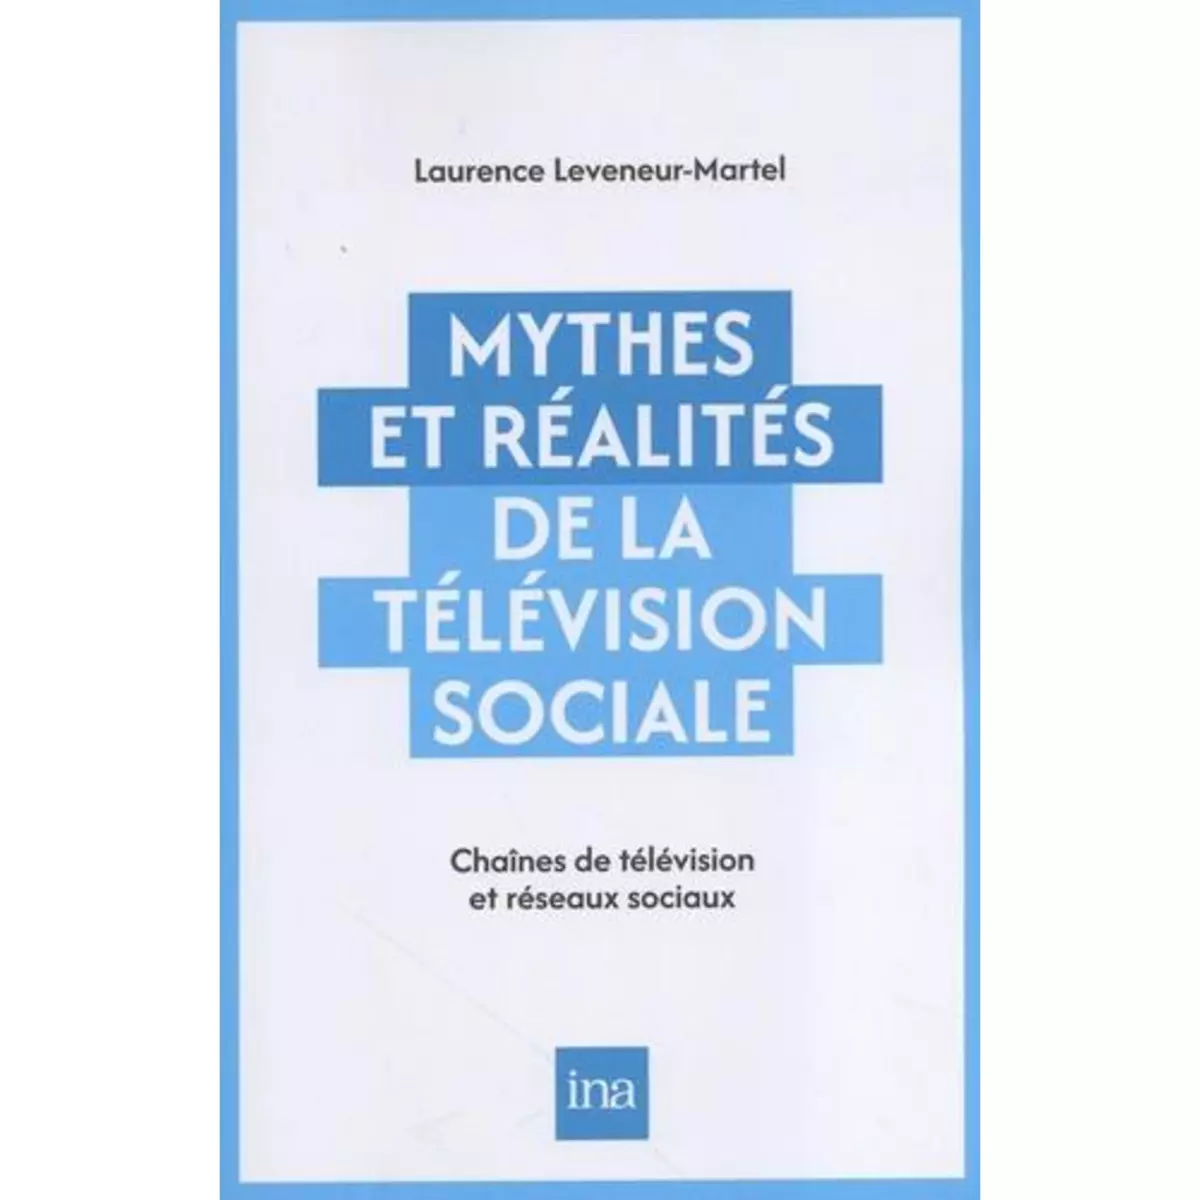  MYTHES ET REALITES DE LA TELEVISION SOCIALE. CHAINES DE TELEVISION ET RESEAUX SOCIAUX, Leveneur Laurence